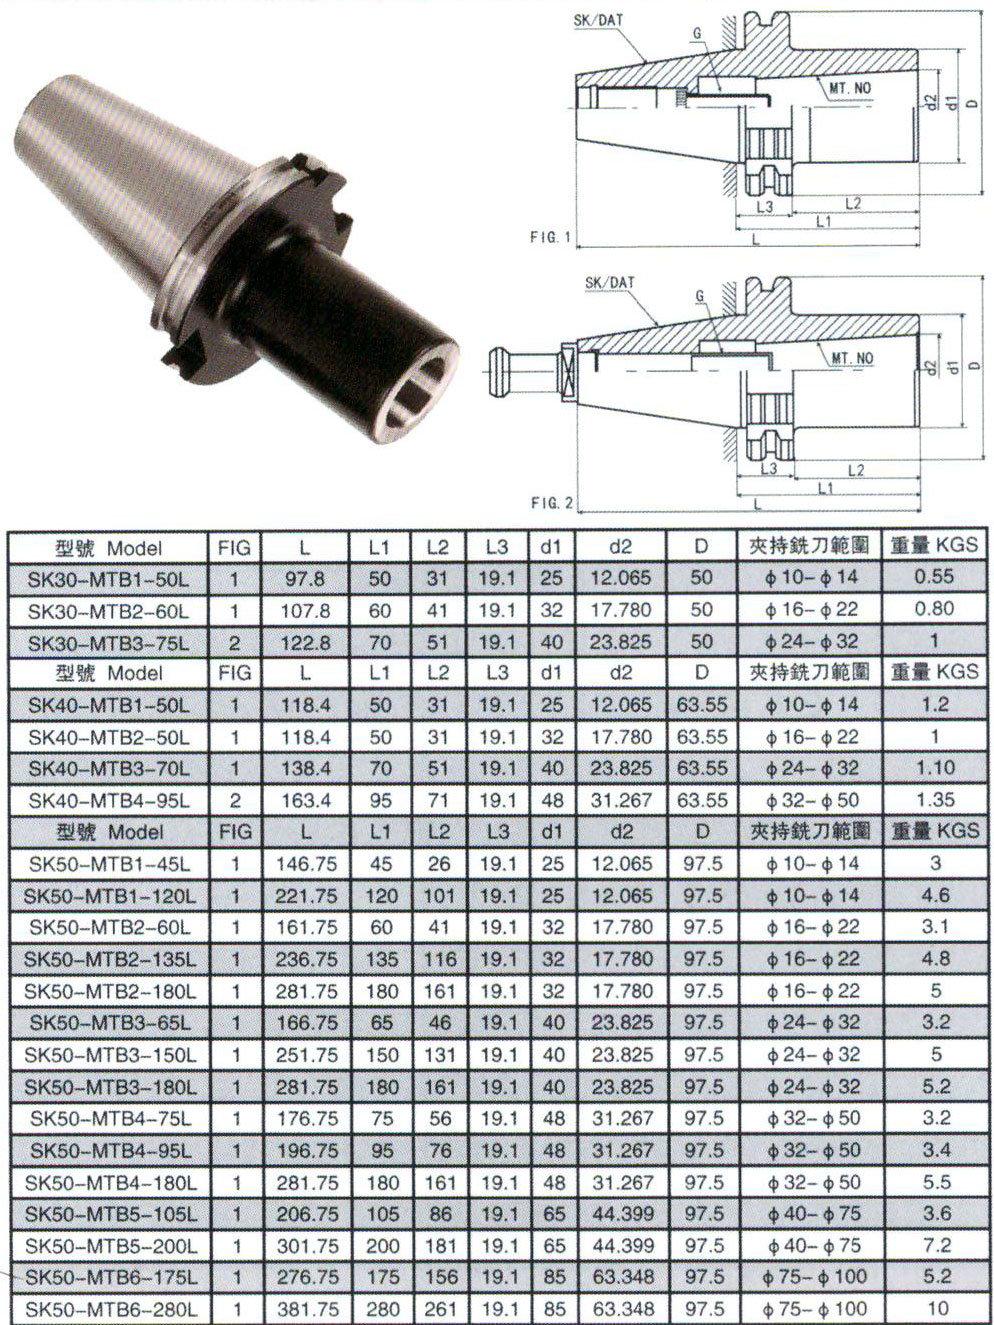 Bt/DIN2080/Jt/Sk/Dat/Cat Tool Holder, Sk40-MTB Morse Taper Adapter